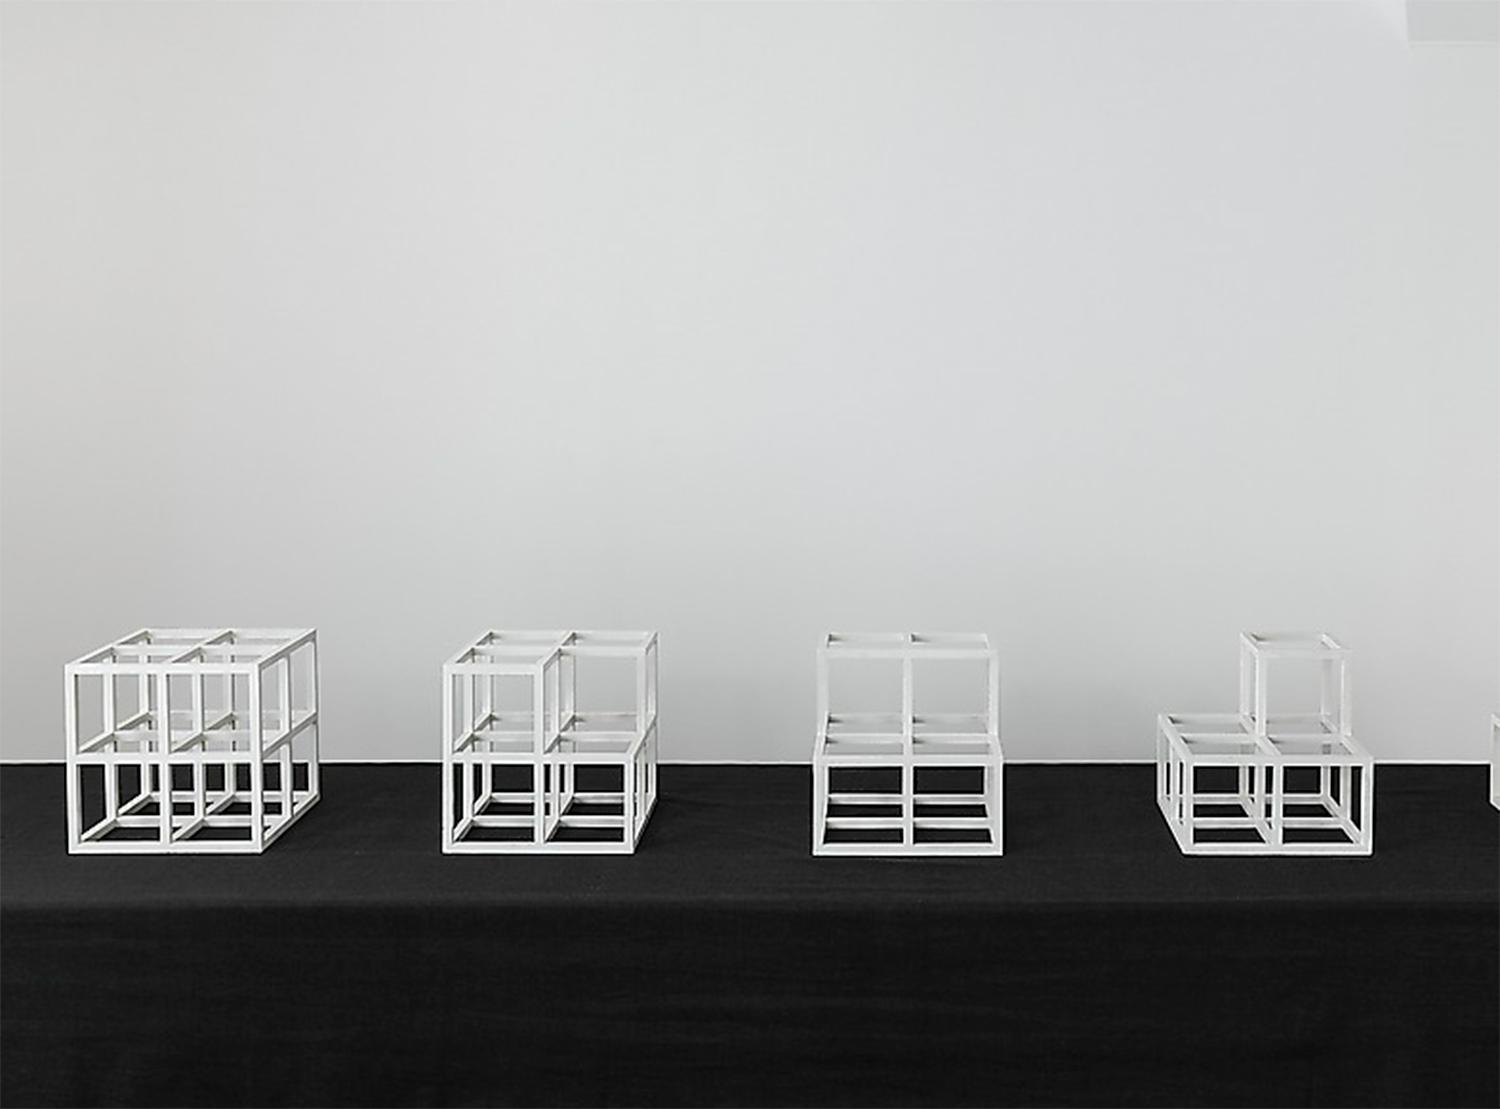 Minimalisten Sol LeWitts (1928–2007) ”4 Cubes Horiztonal (Series)” från 1974. Vit färg på träkuber.